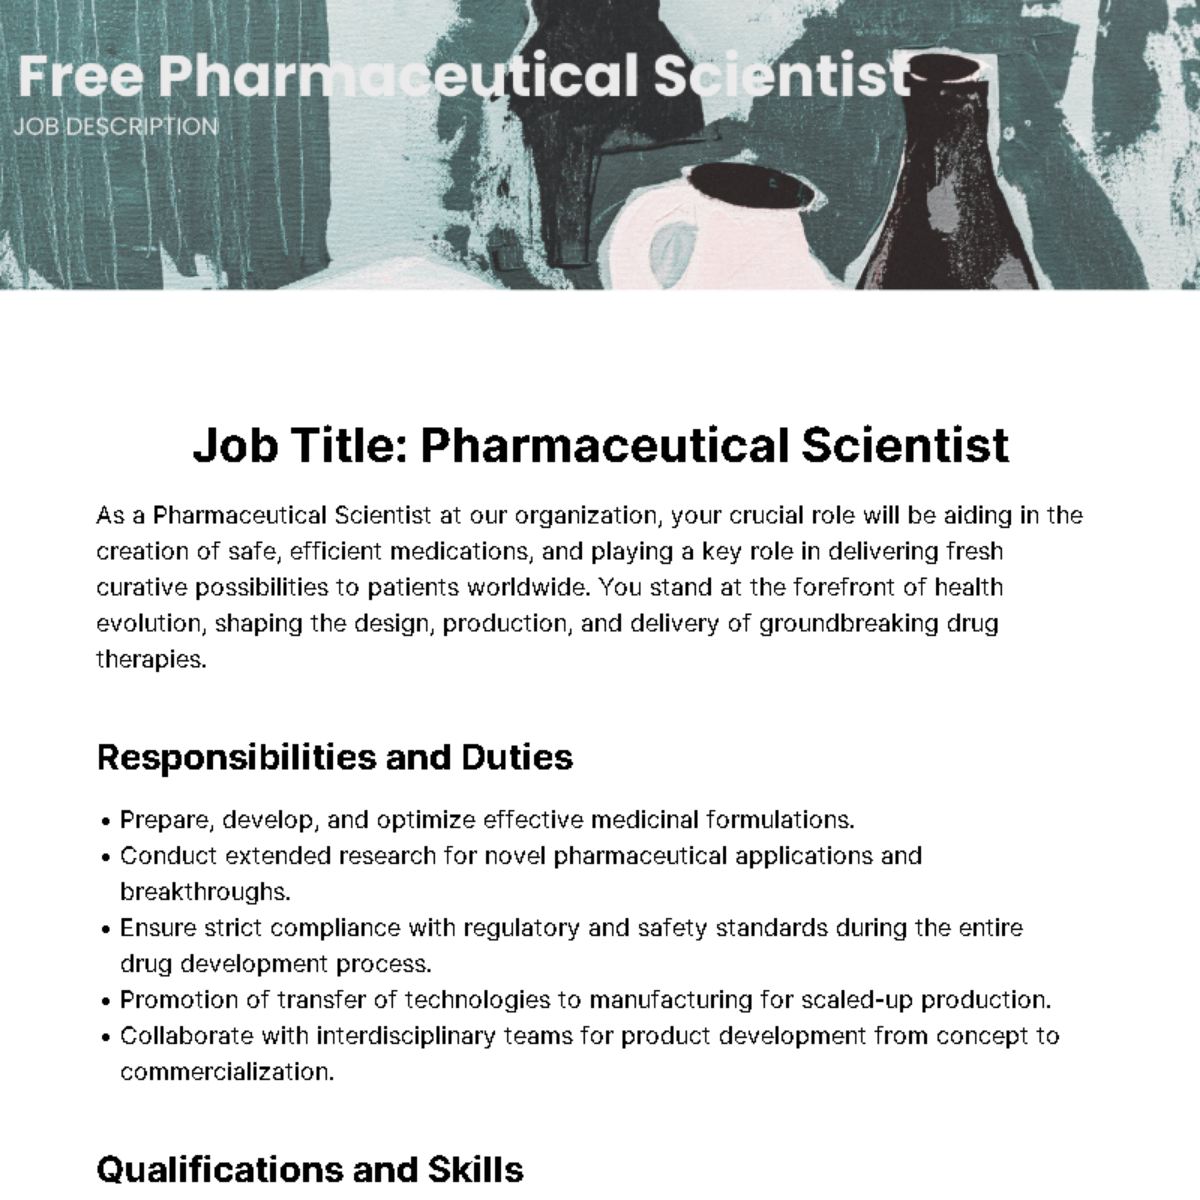 Free Pharmaceutical Scientist Job Description Template